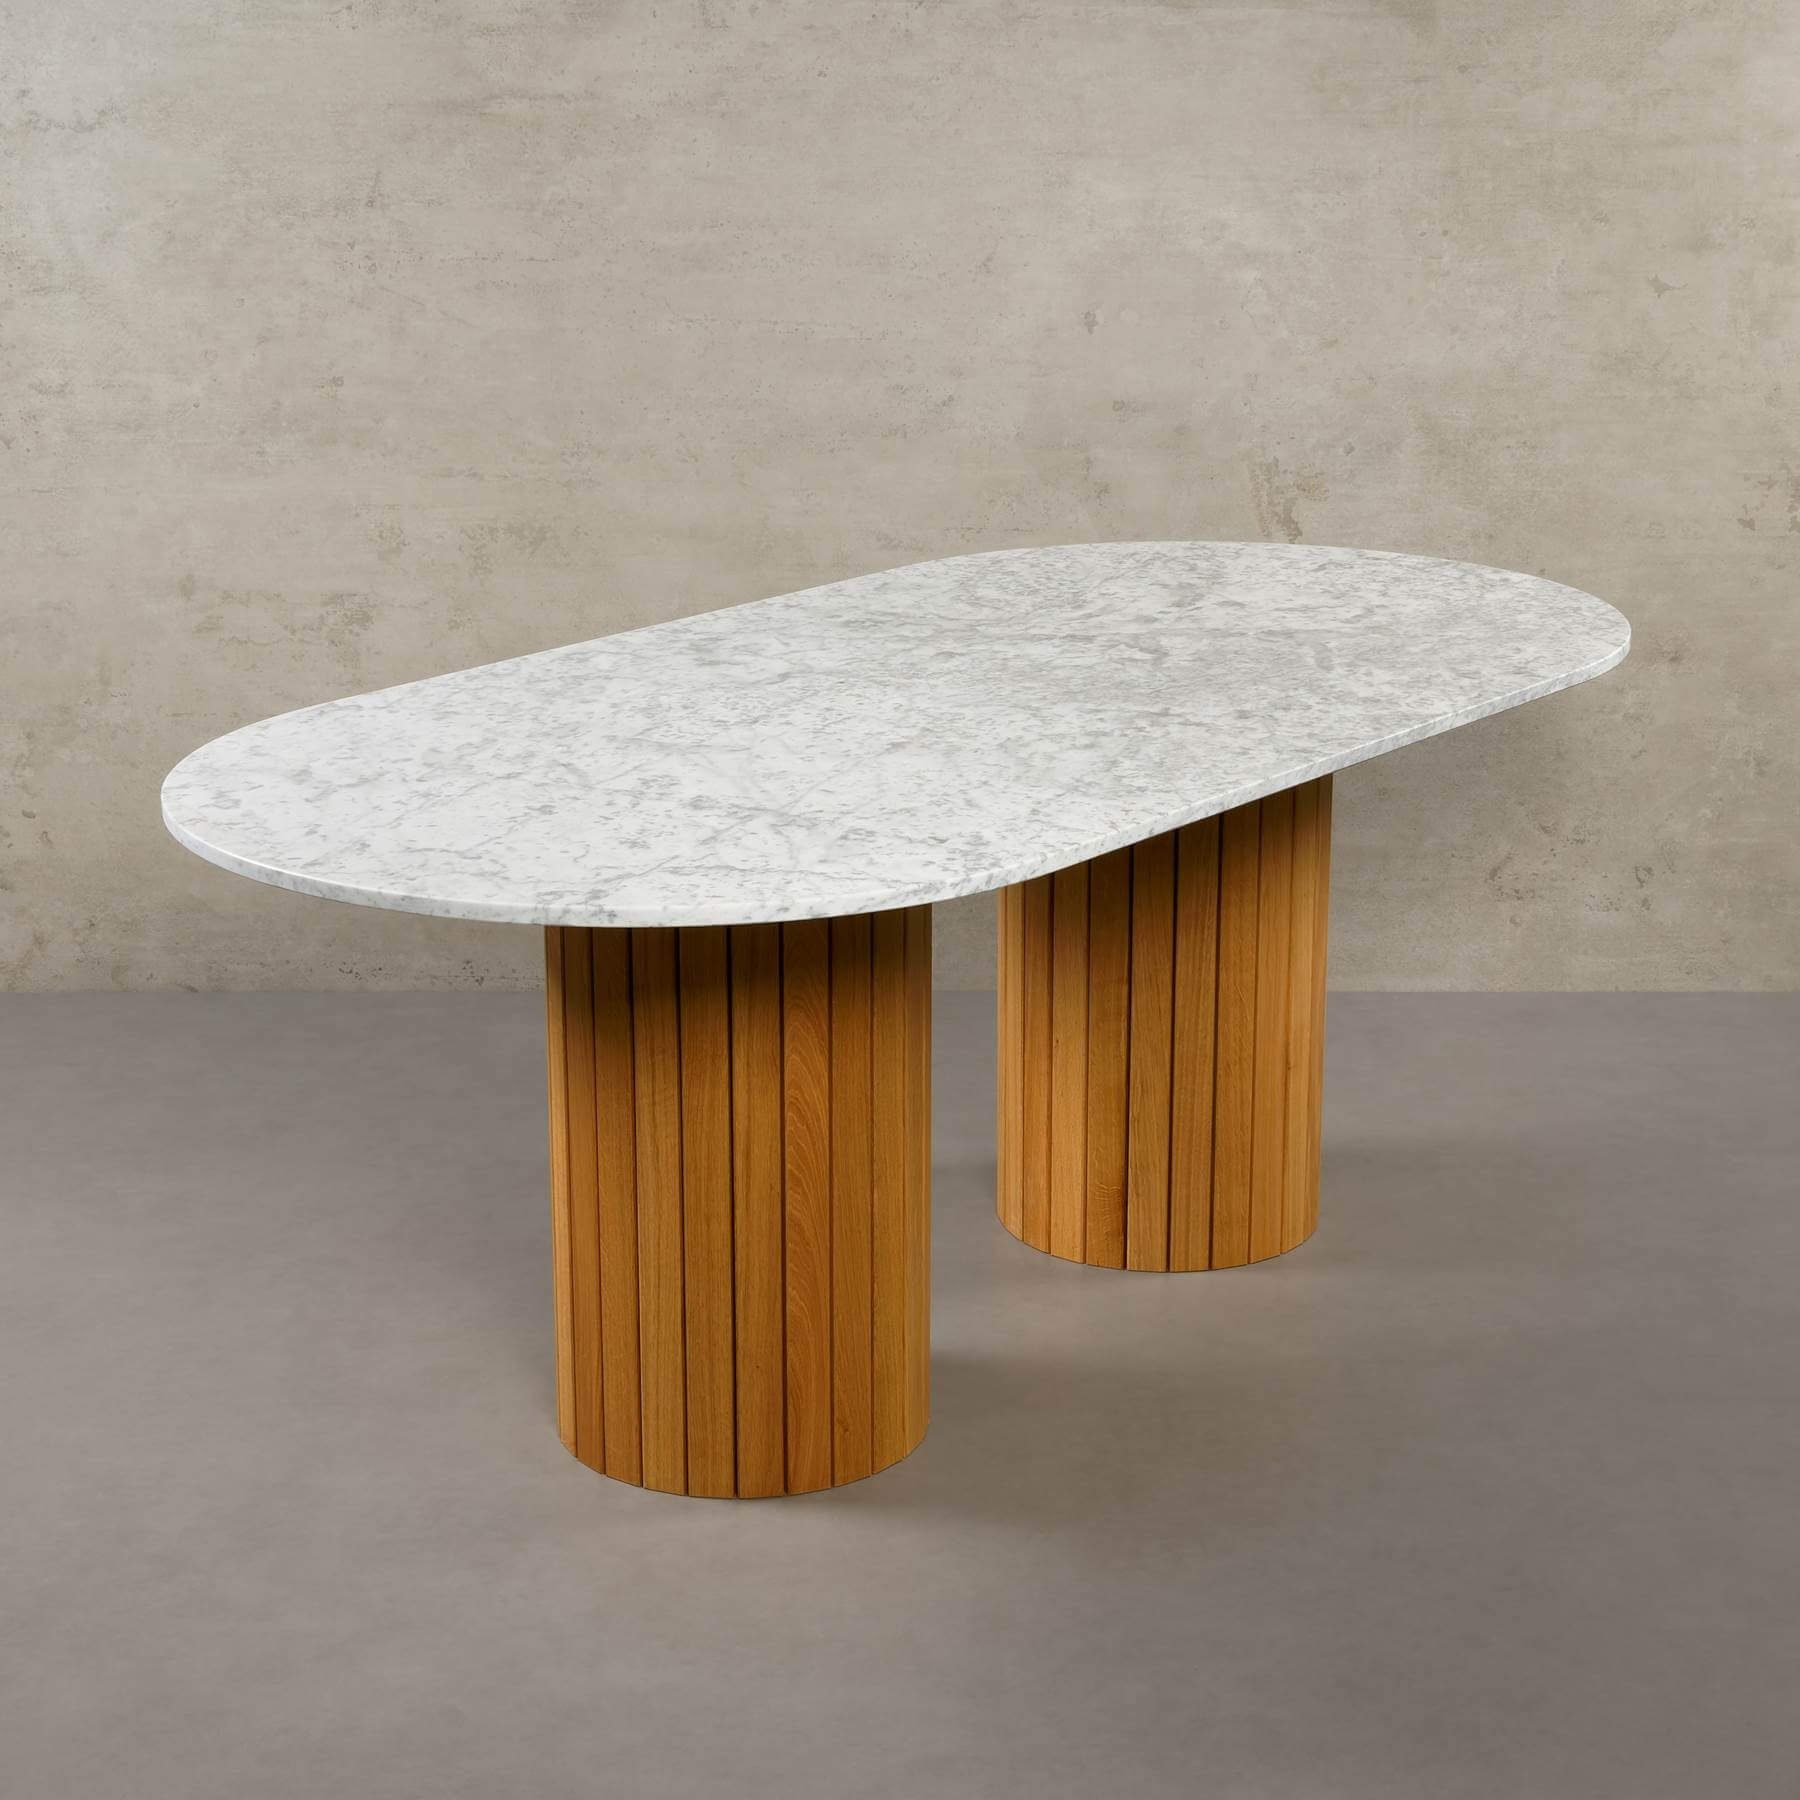 MAGNA Atelier Esstisch Montana mit ECHTEM MARMOR, Esstisch Tisch rund, Eichenholz Gestell, 200x100x76cm Bianco Carrara